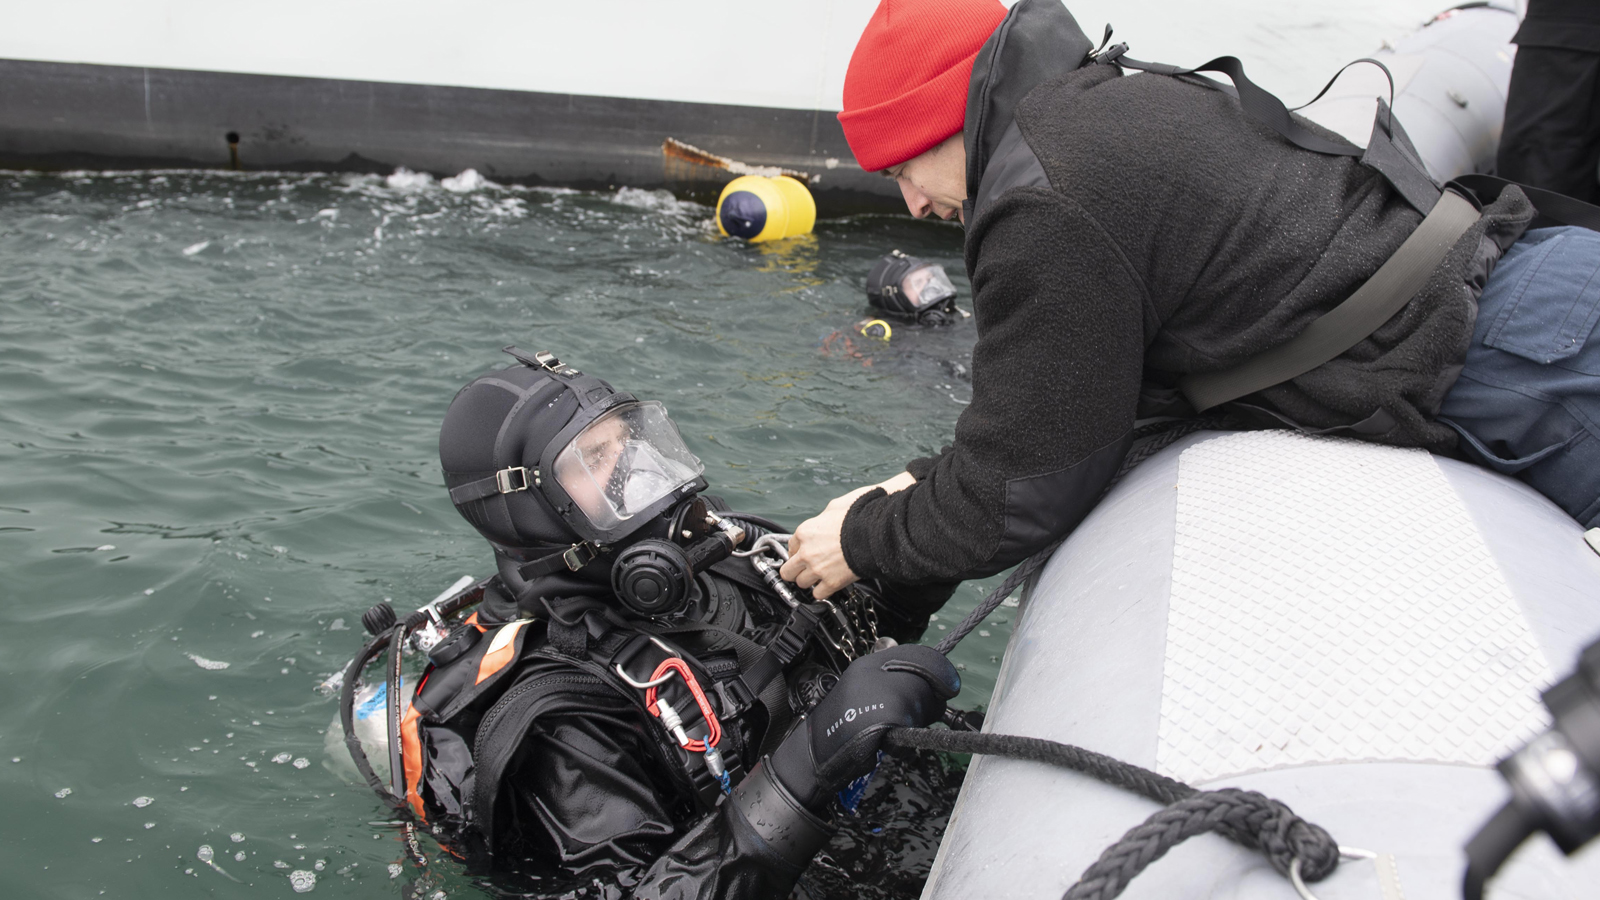 Le matelot de 1re classe (mat 1) Cory Taylor (à droite) aide le Mat 1 John Kester à retirer son équipement à la fin d’une opération de plongée au port de Reykjavik, en Islande.